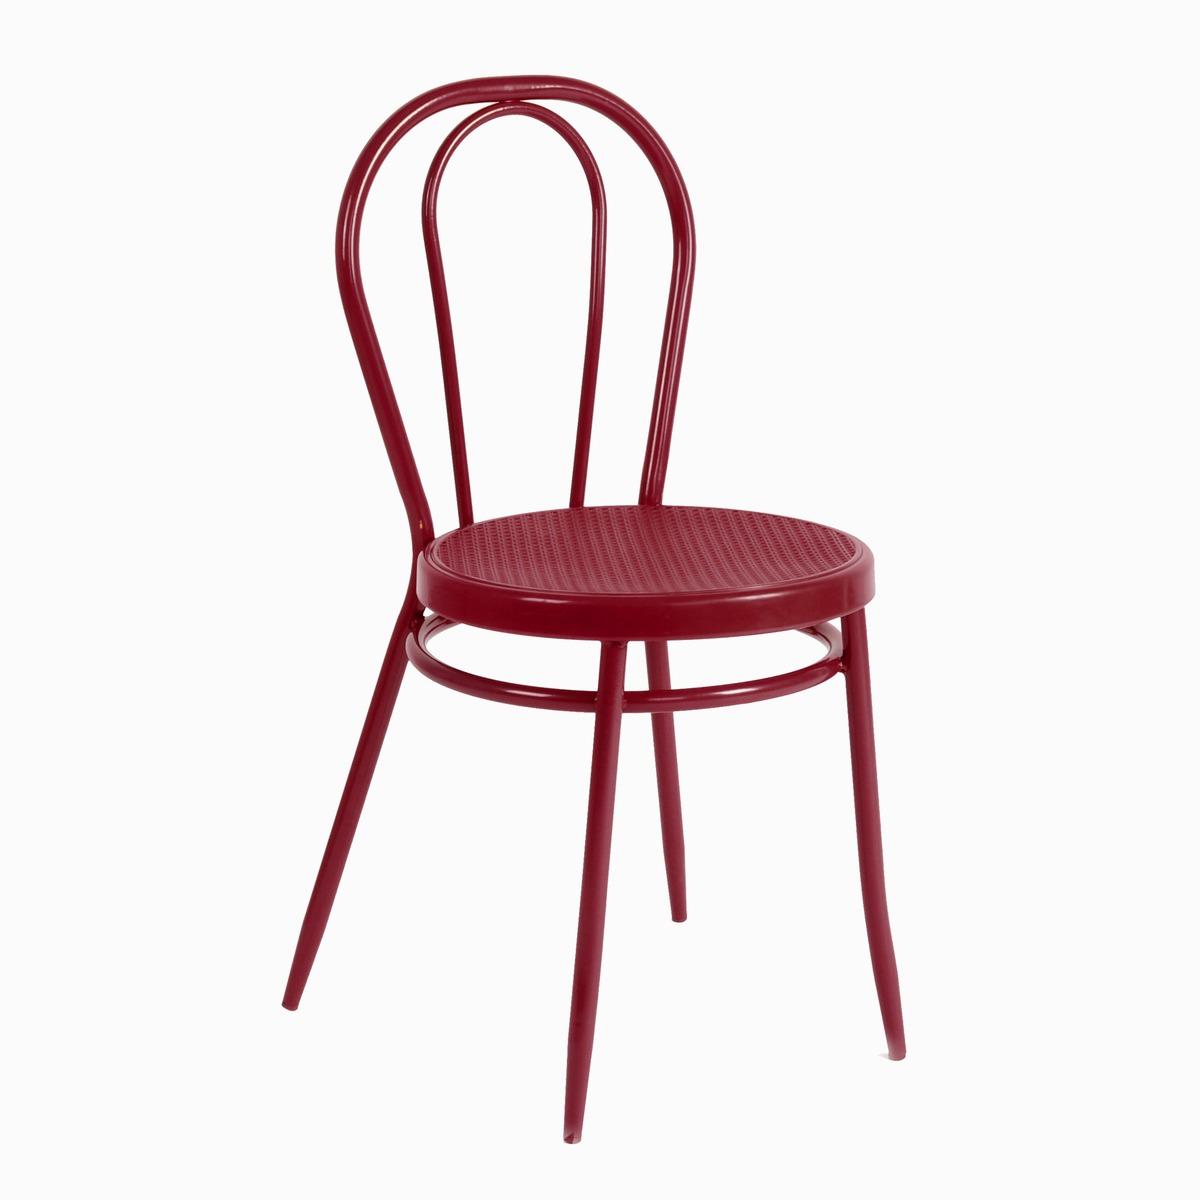 Chaise empilable en acier - 40 x 46 x H 87 cm - Rouge